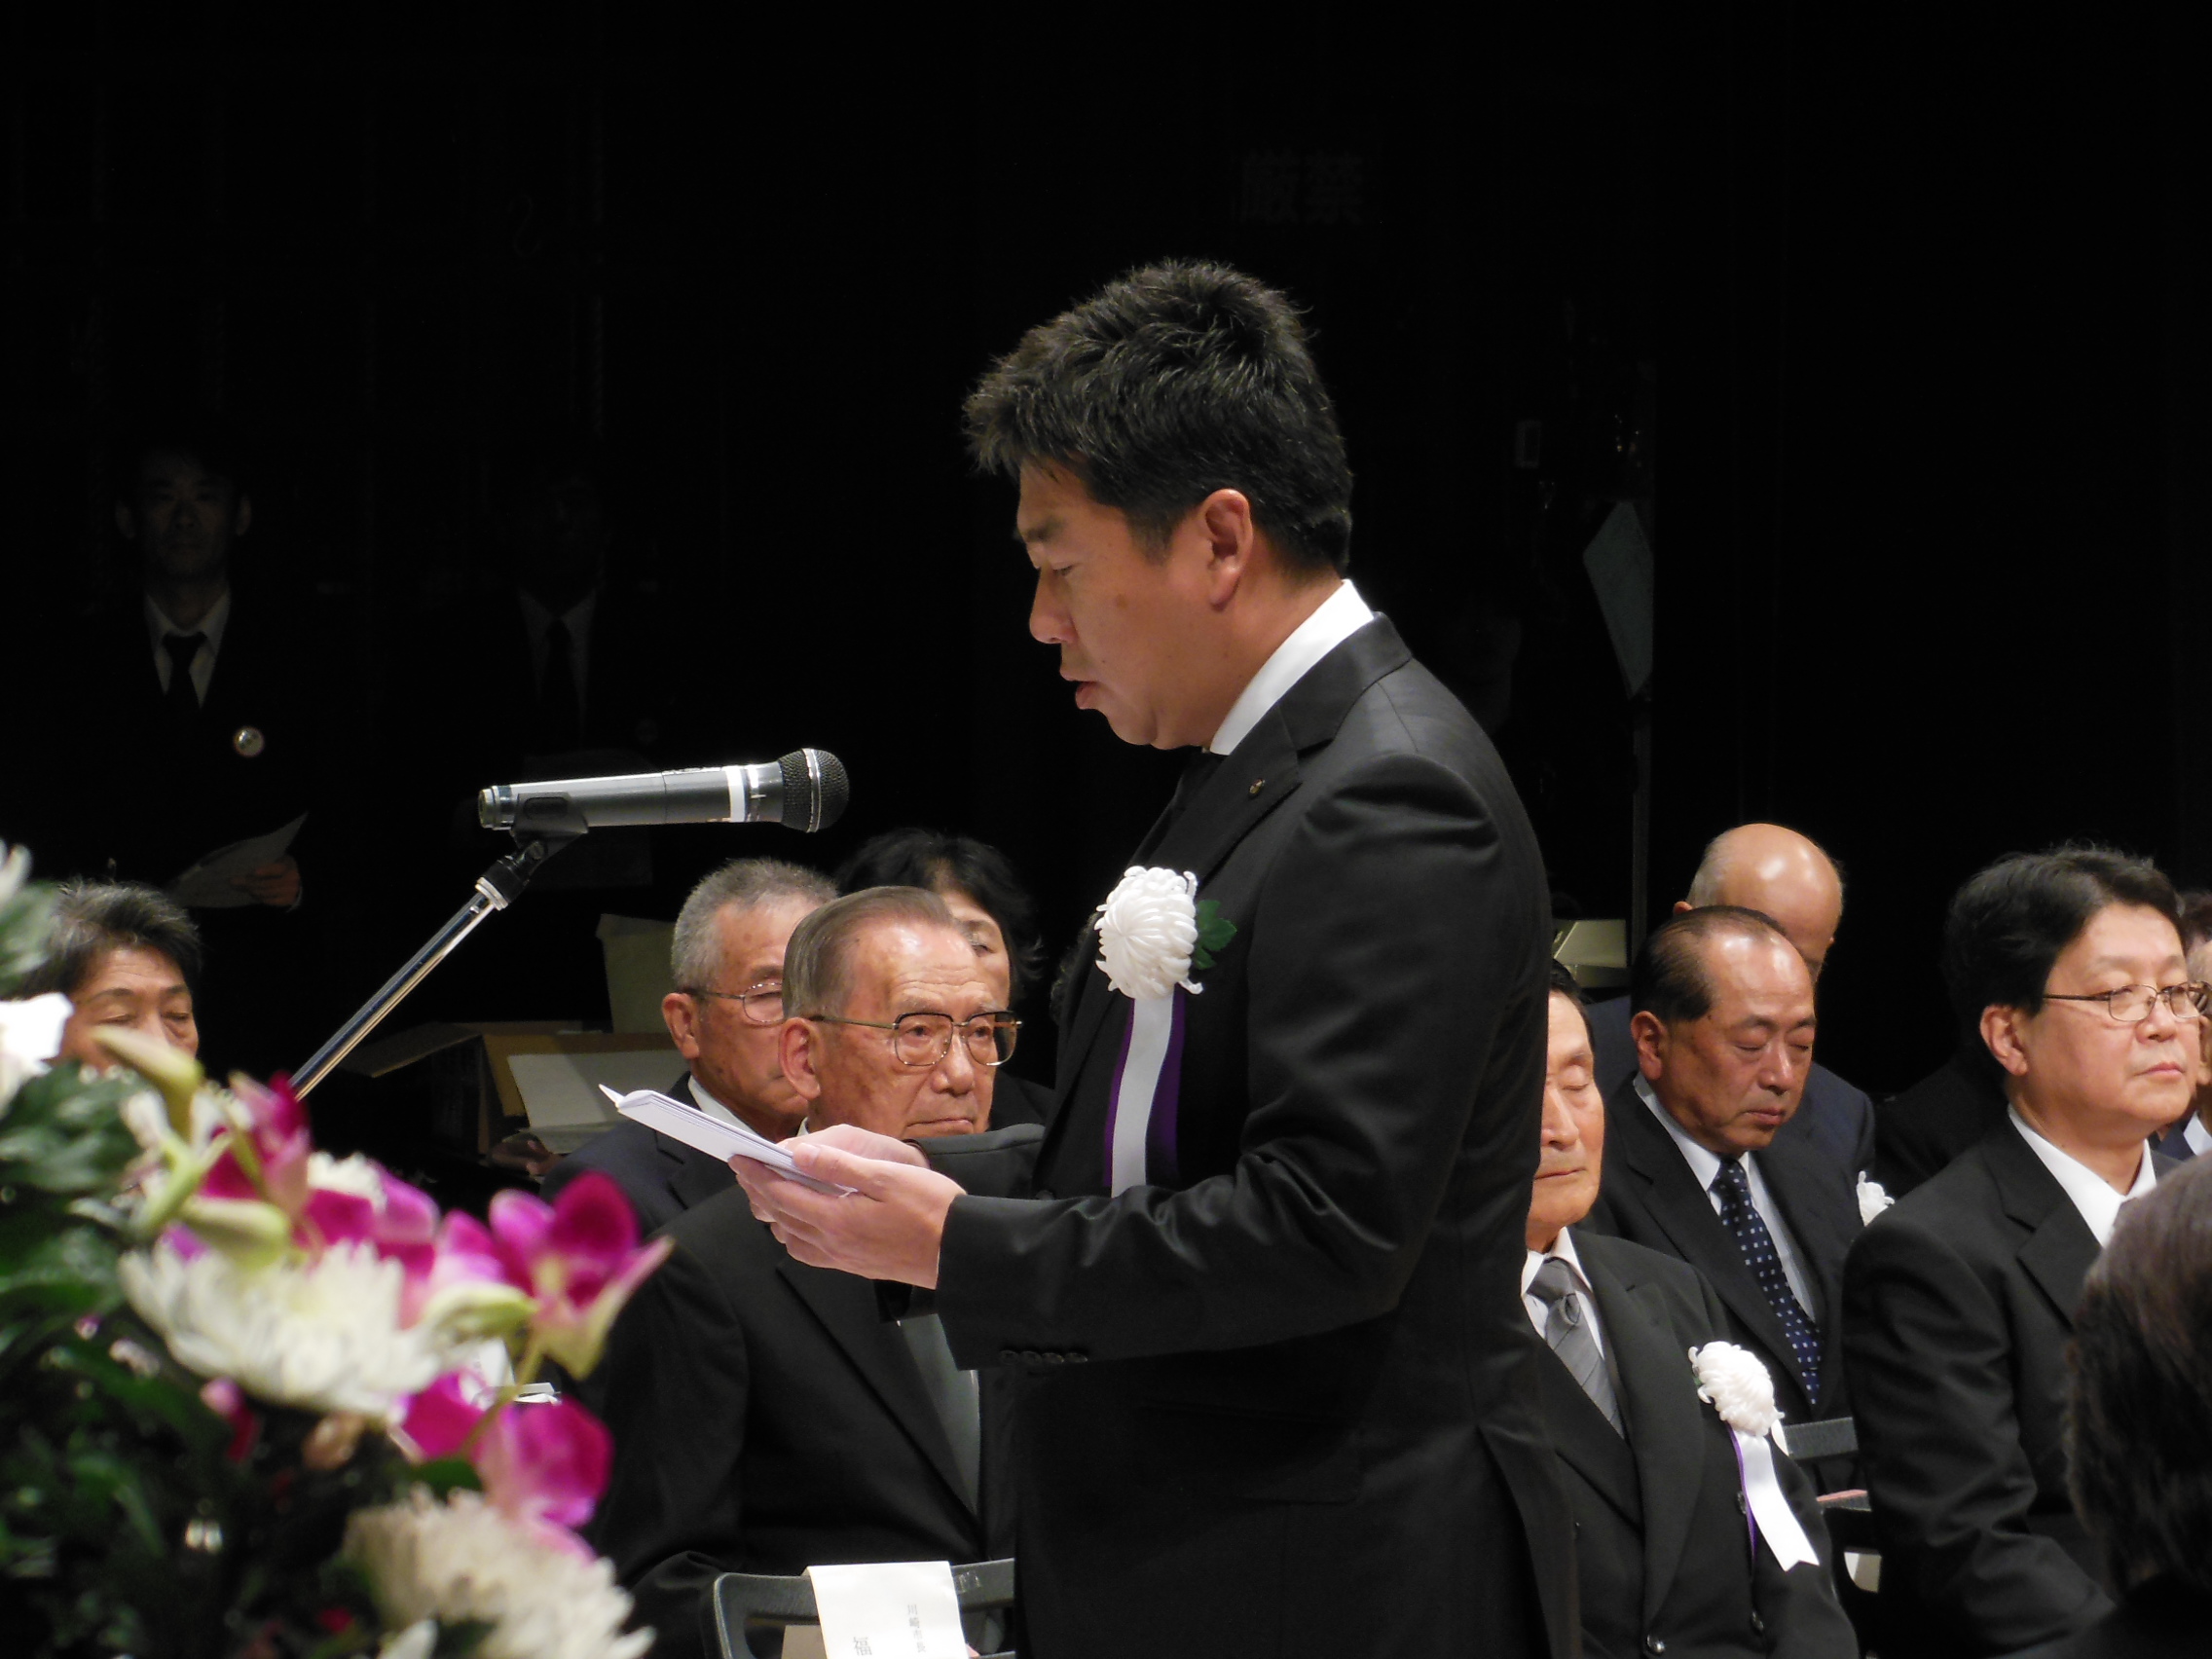 追悼式で式辞を述べる市長